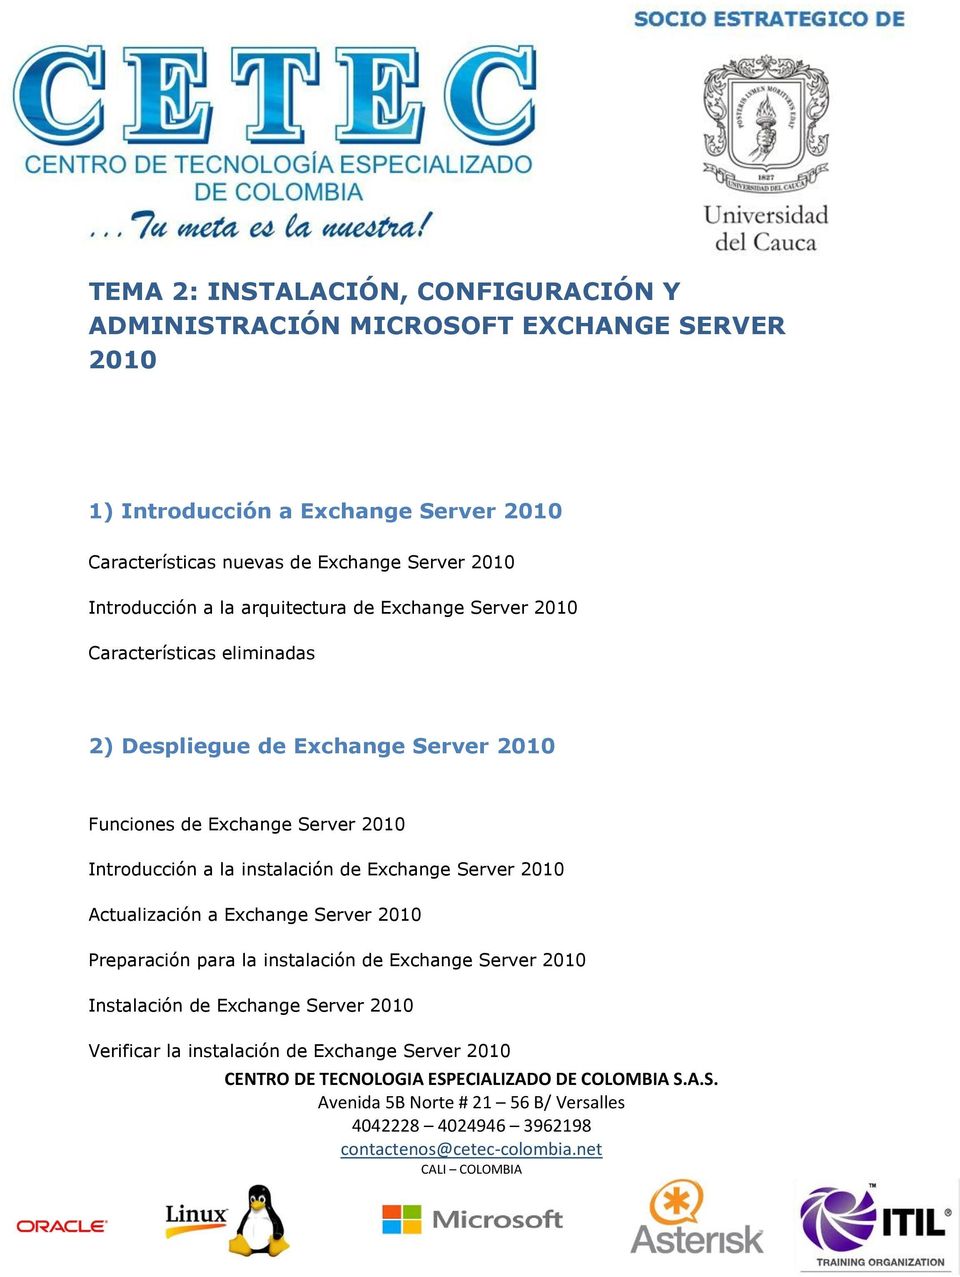 Server 2010 Funciones de Exchange Server 2010 Introducción a la instalación de Exchange Server 2010 Actualización a Exchange Server 2010